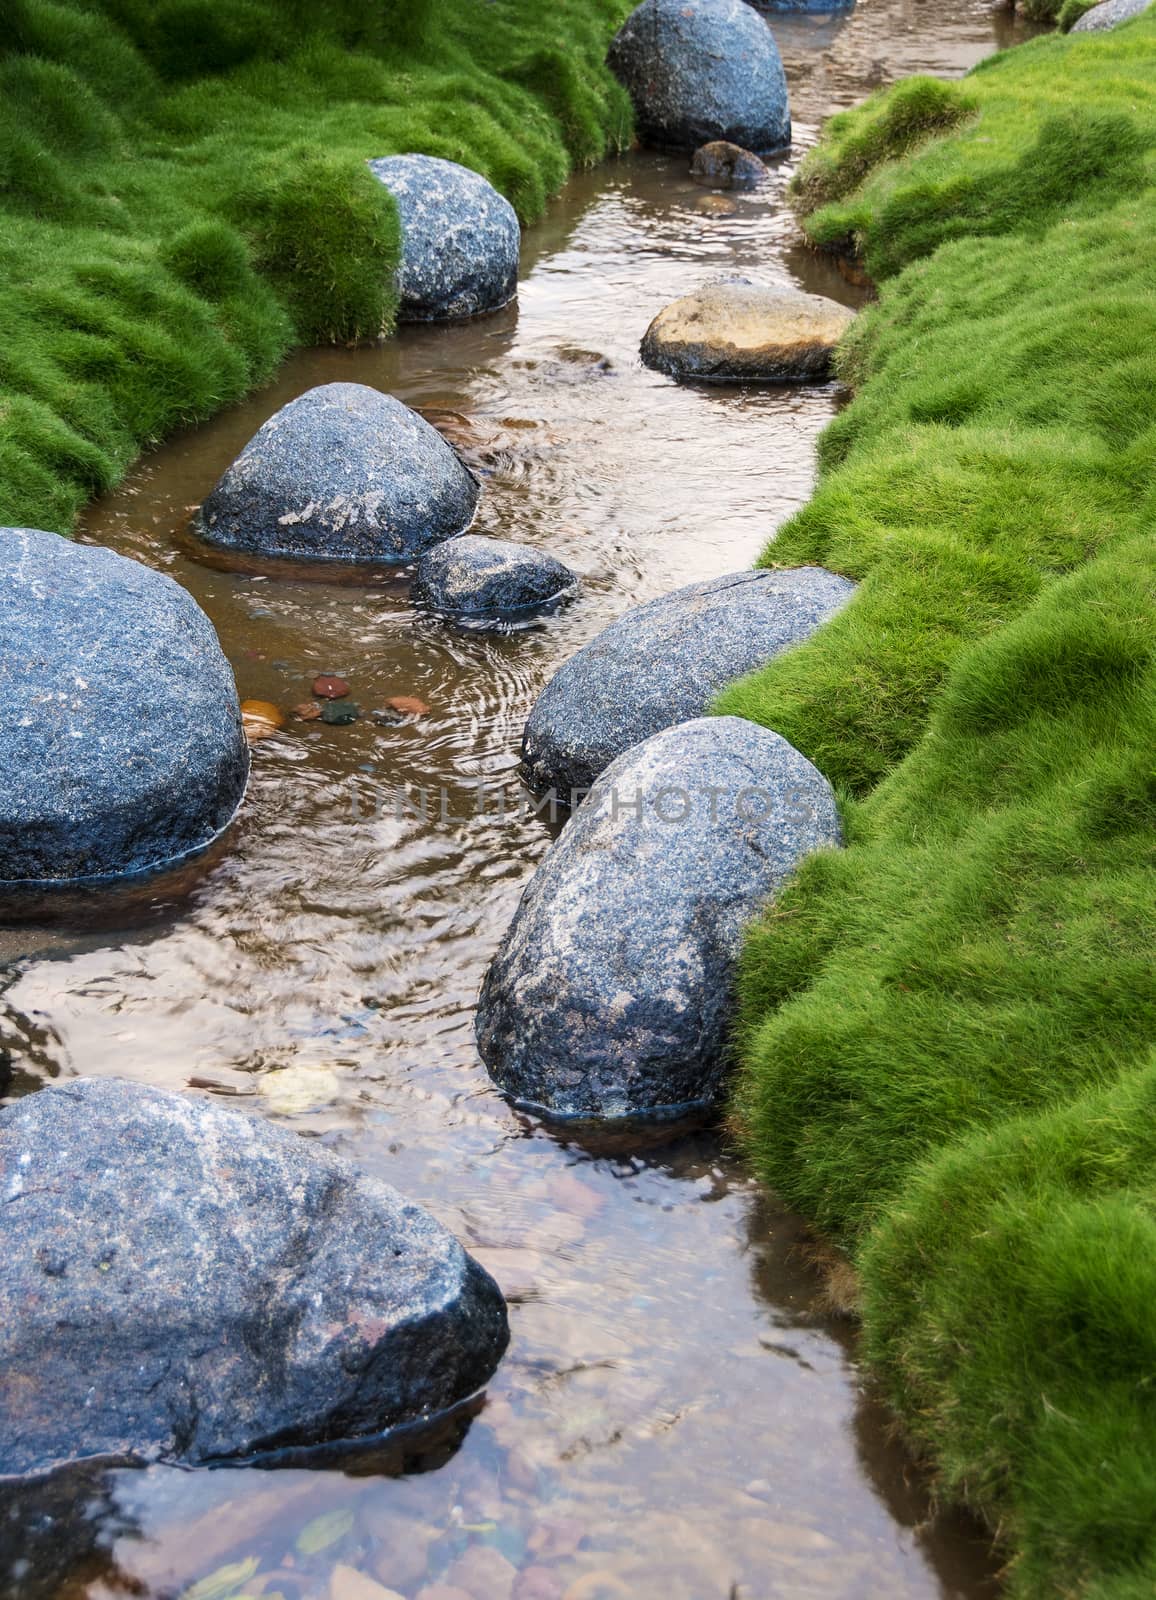 Rocks in a Creek by whitechild